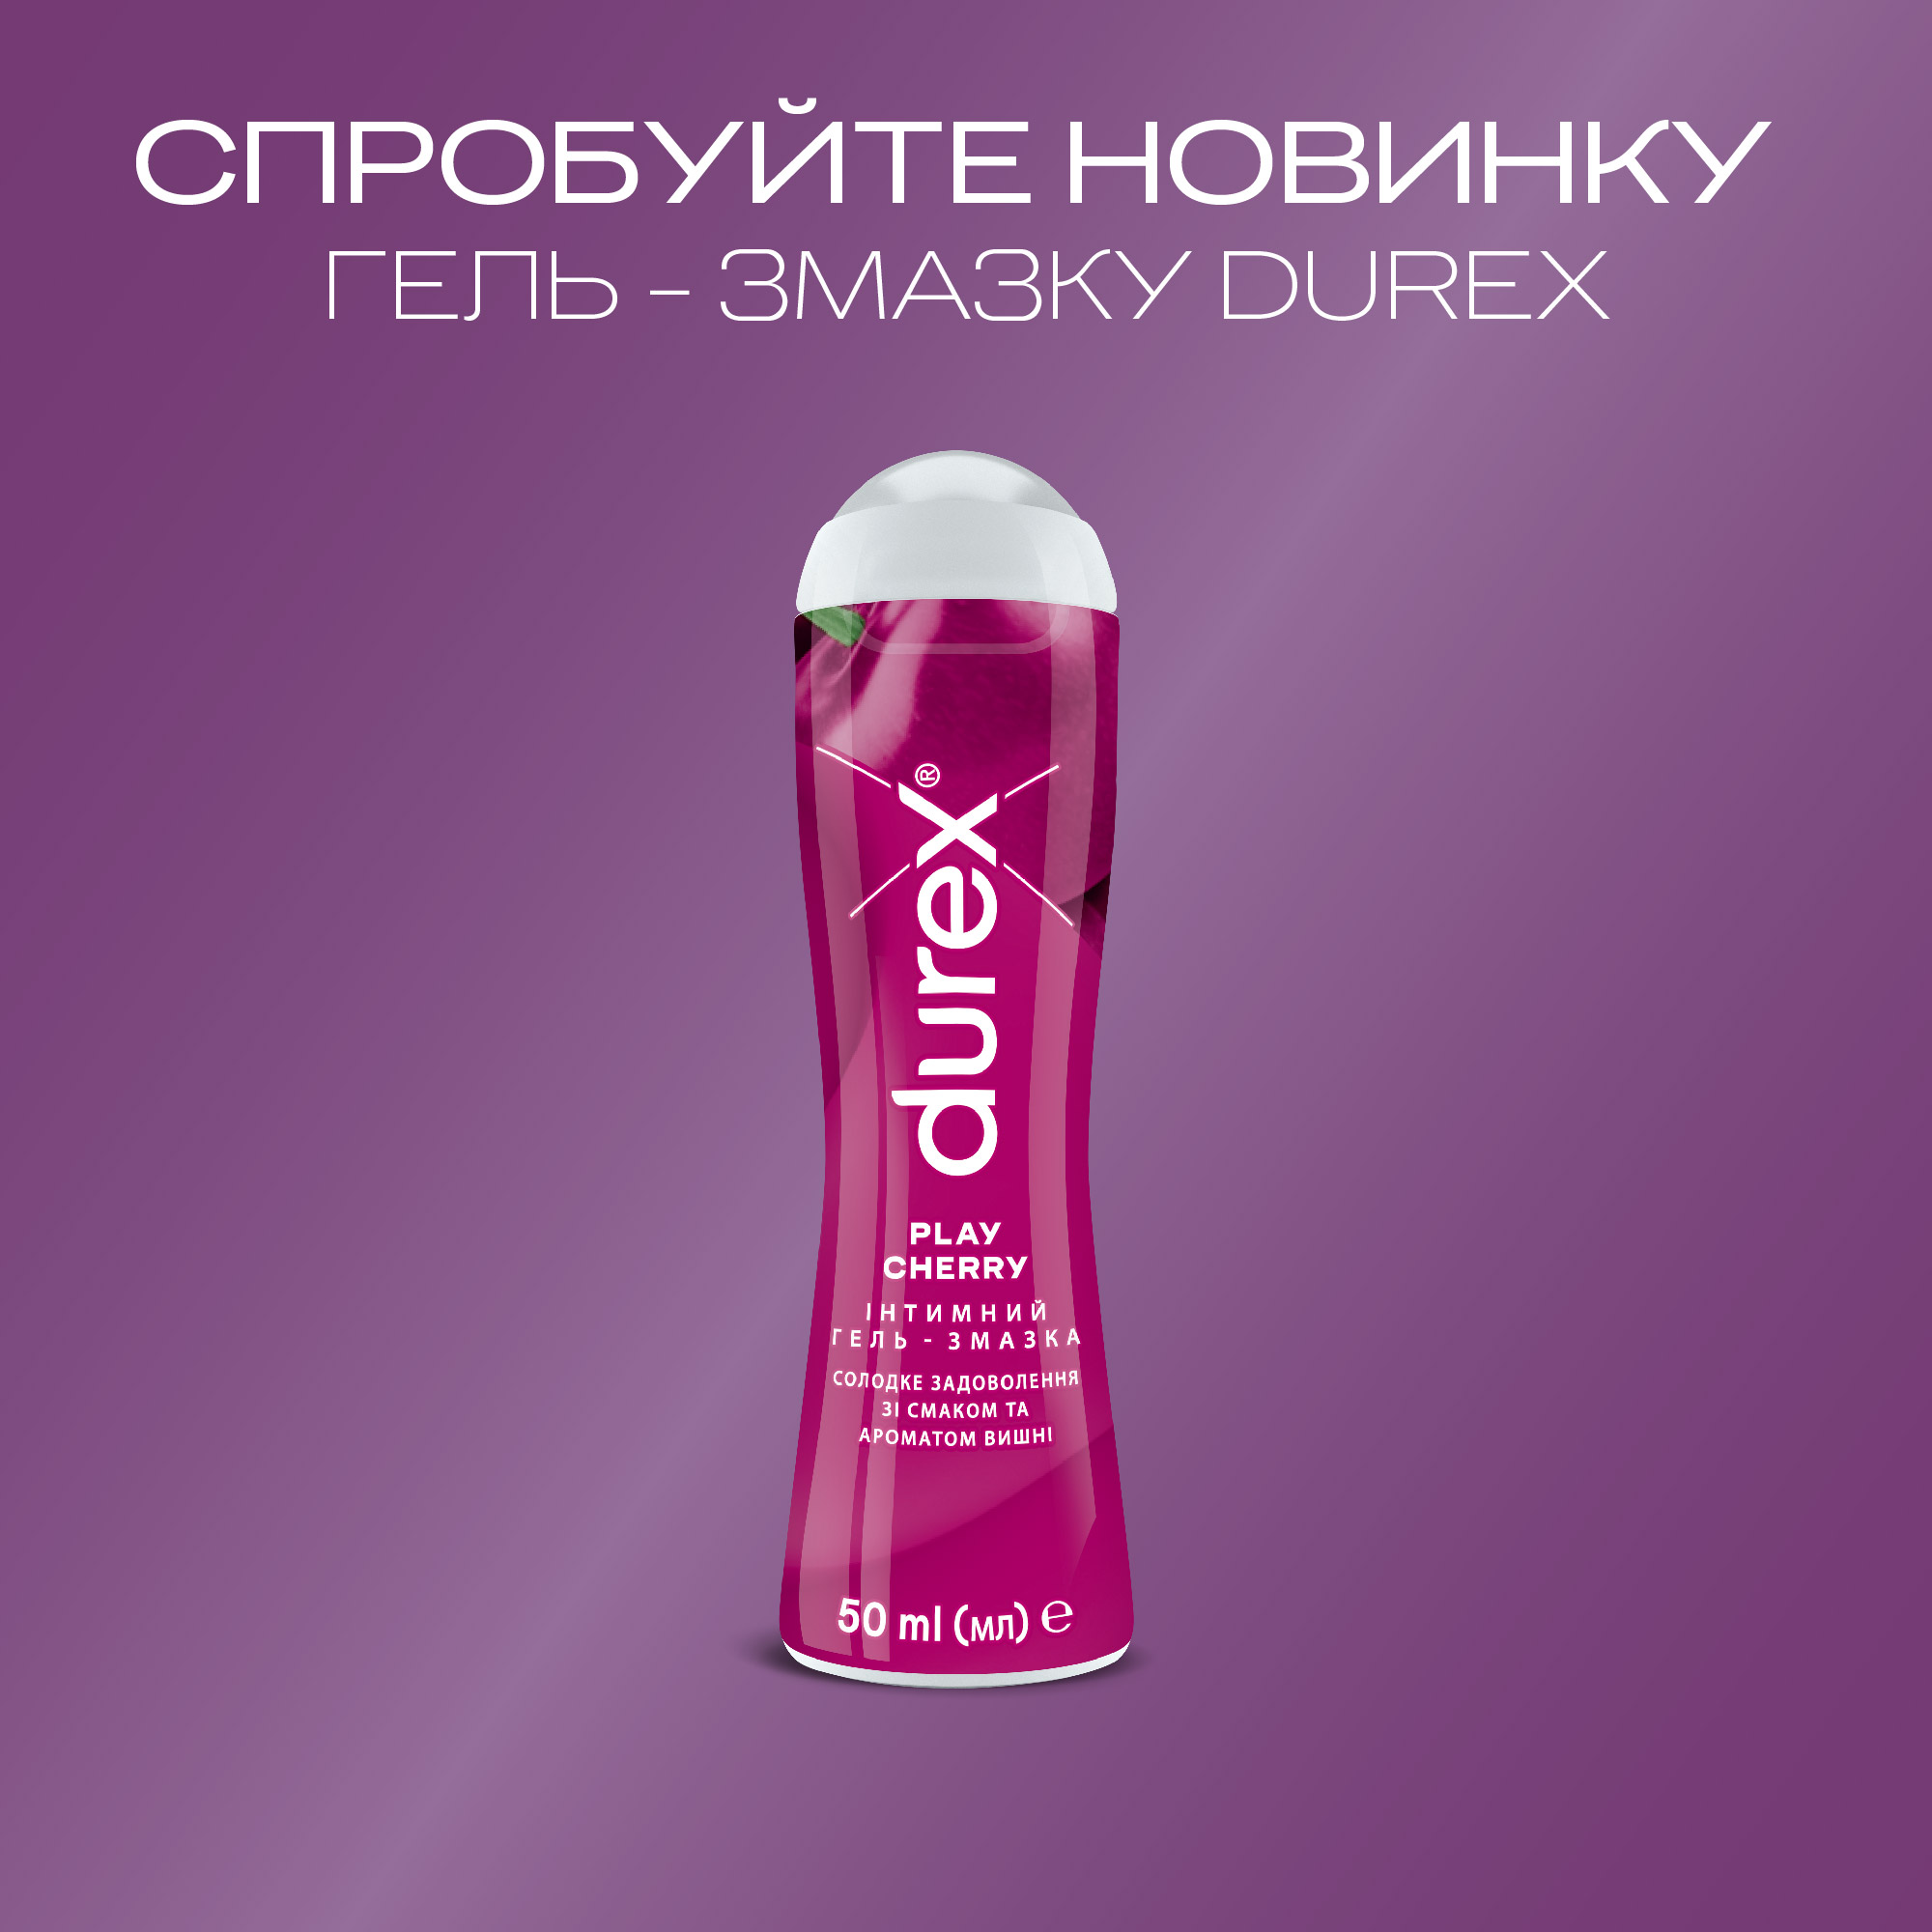 Интимная гель-смазка Durex Play Cherry, со вкусом и ароматом вишни (лубрикант), 50 мл (3231112) - фото 3